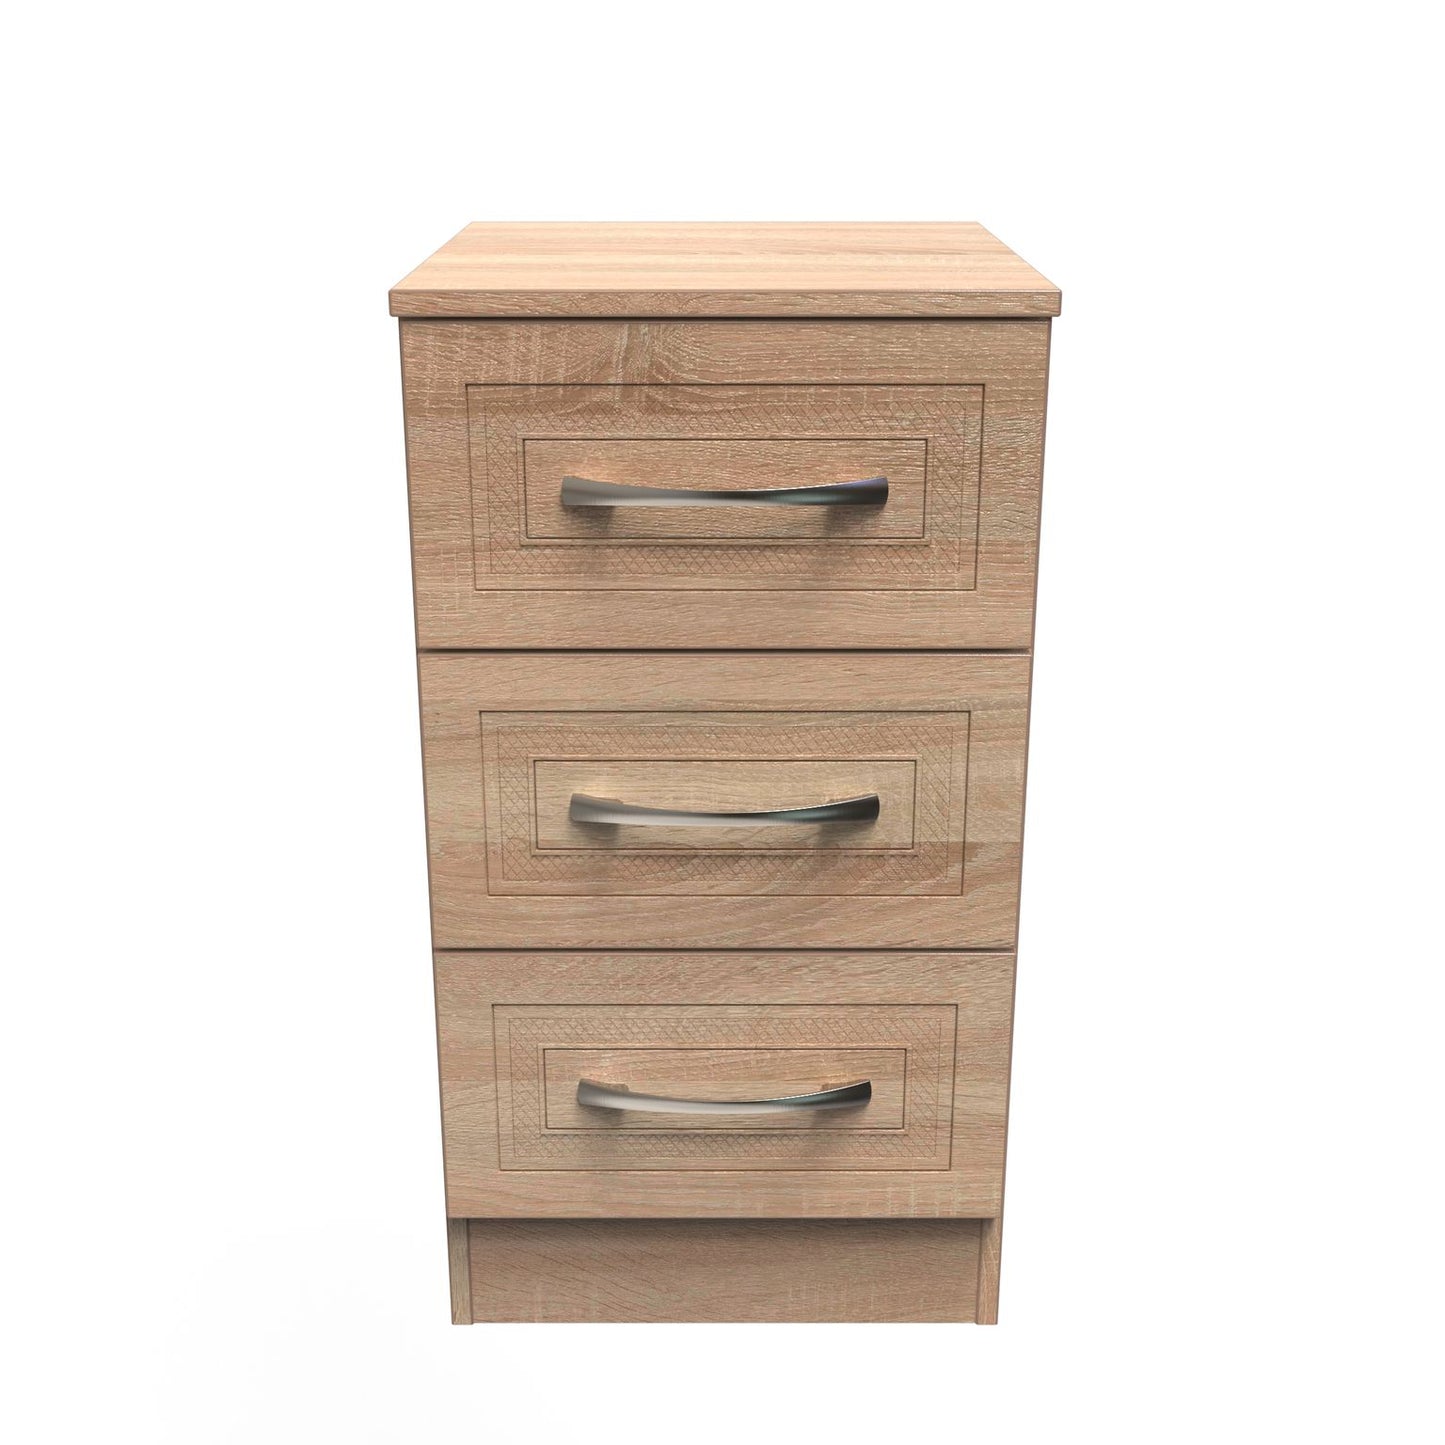 Dorset 3 Drawer Bedside Cabinet